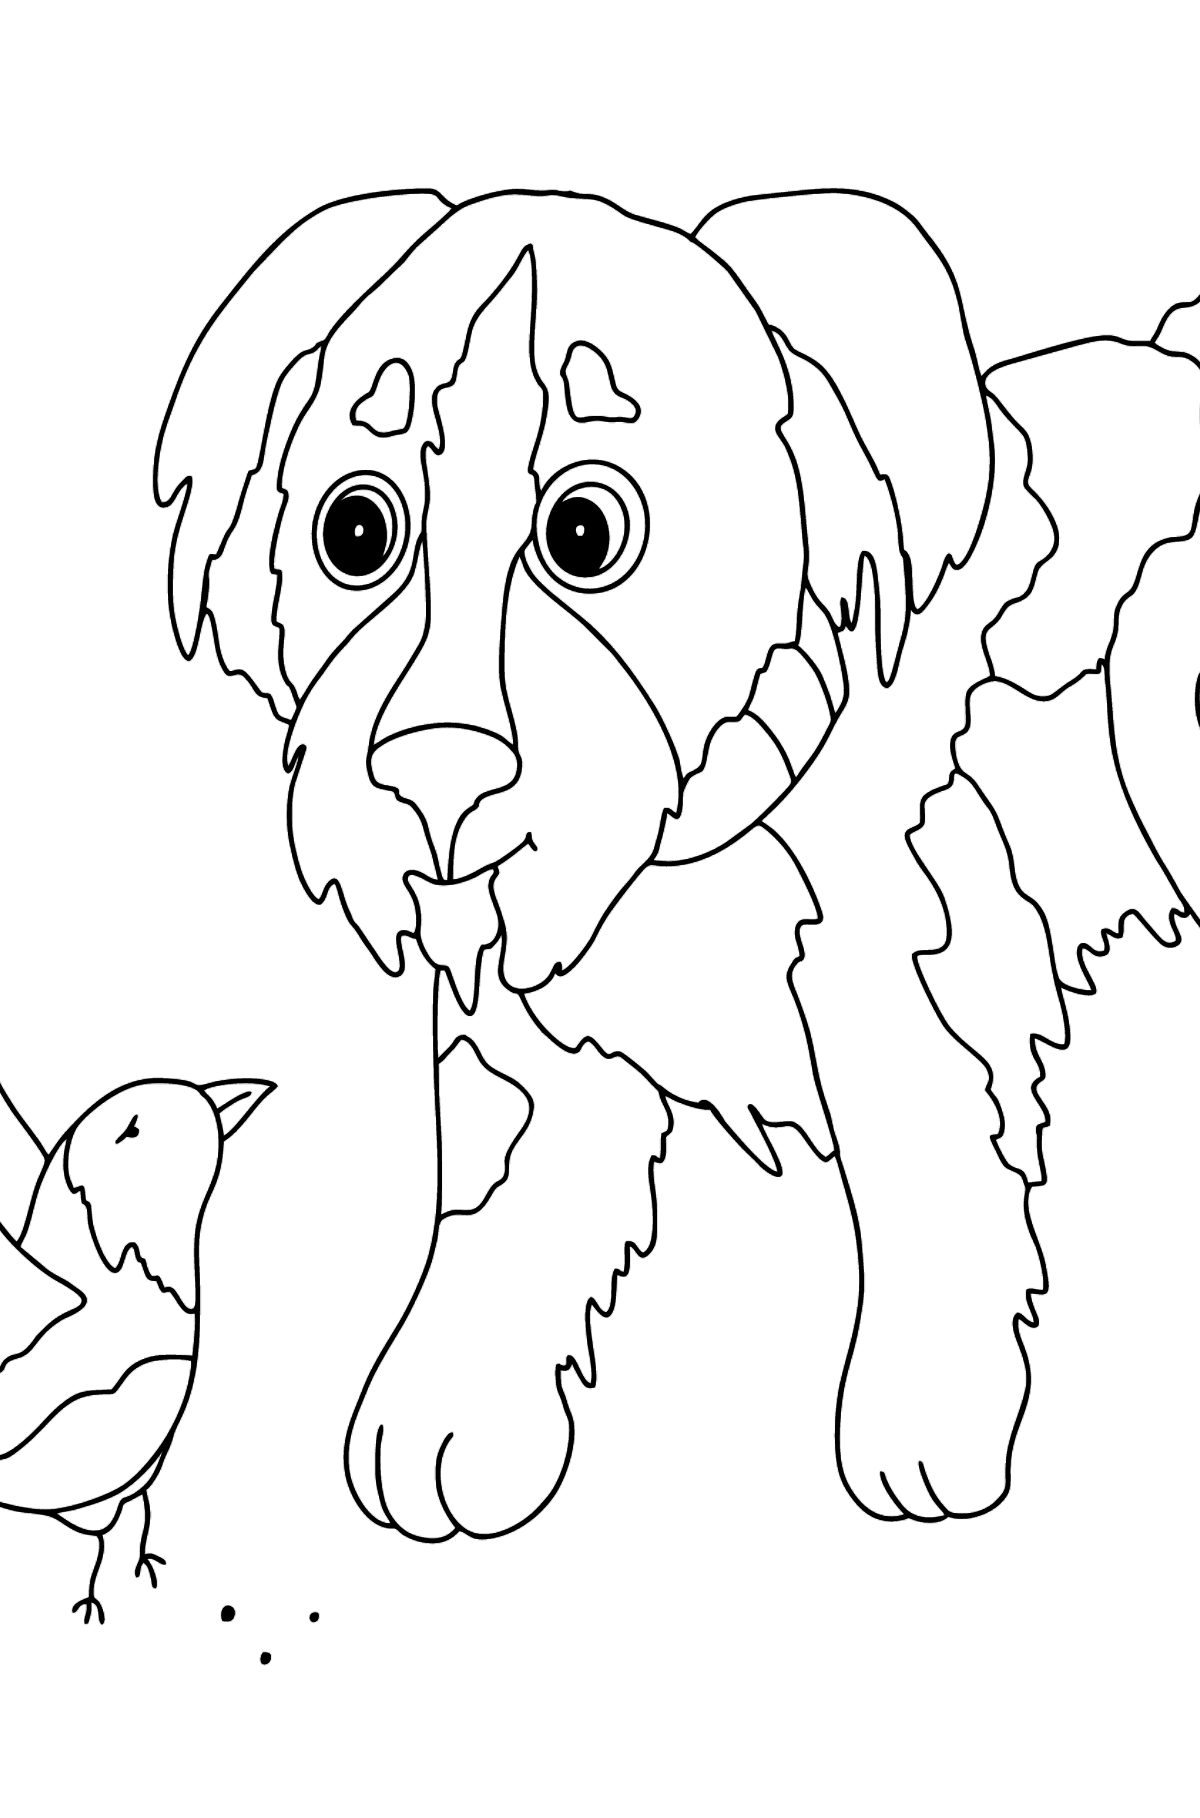 Раскраска Веселая Собака - Картинки для Детей